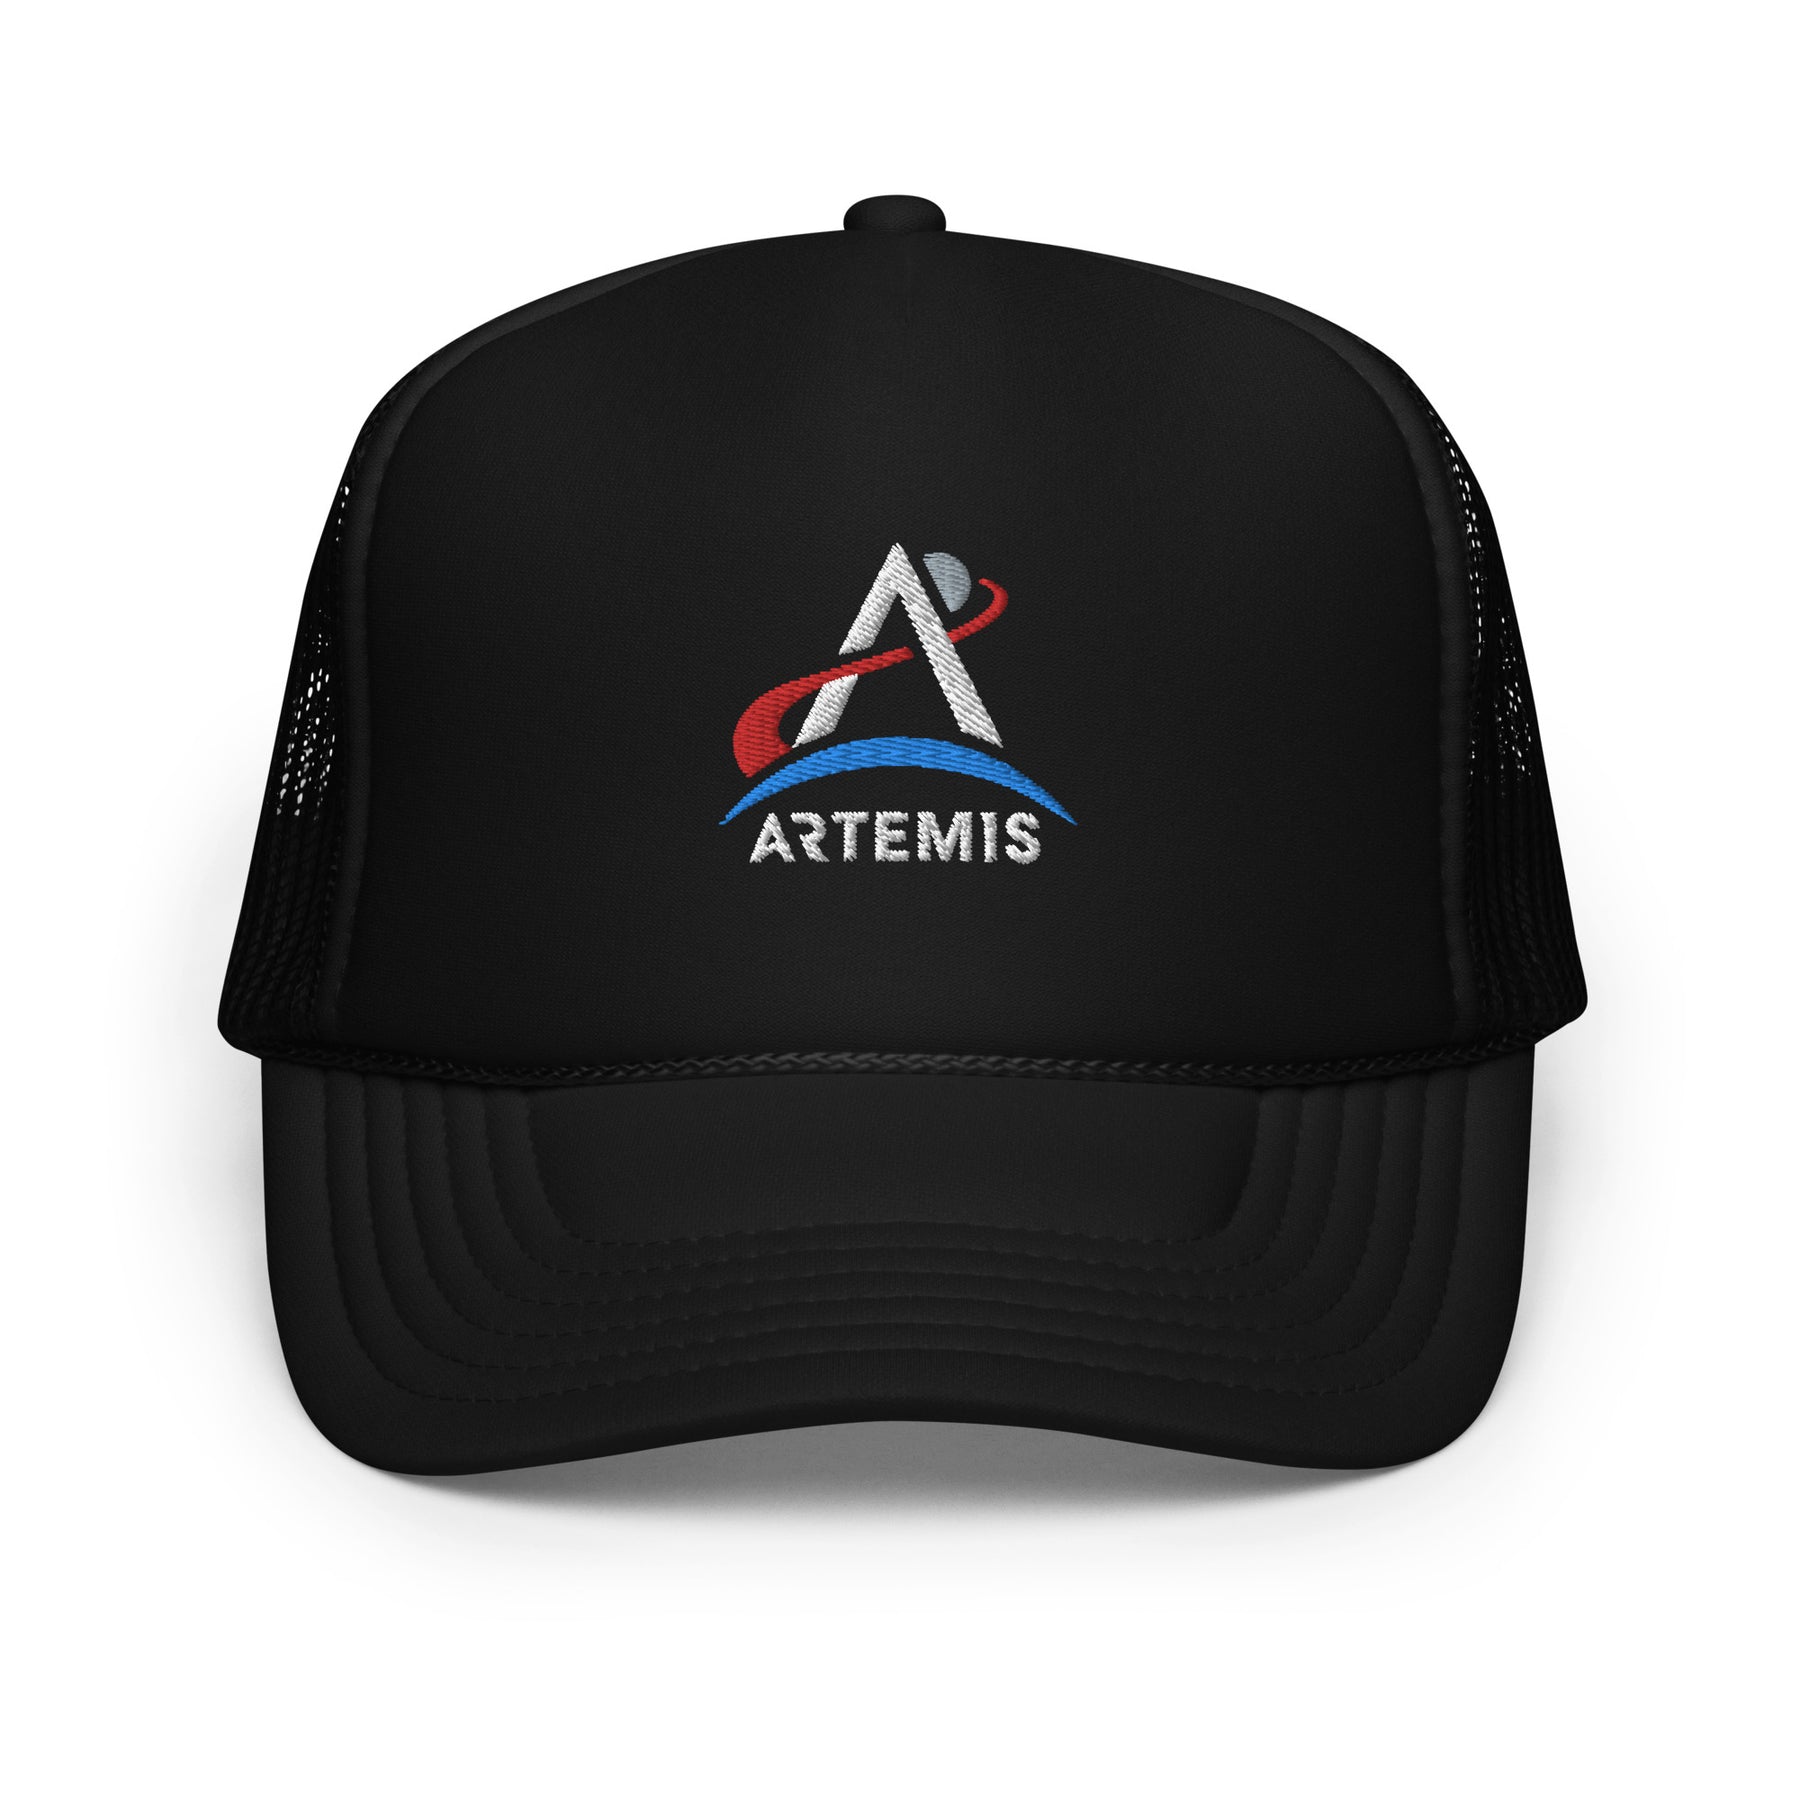 Artemis Foam Trucker hat